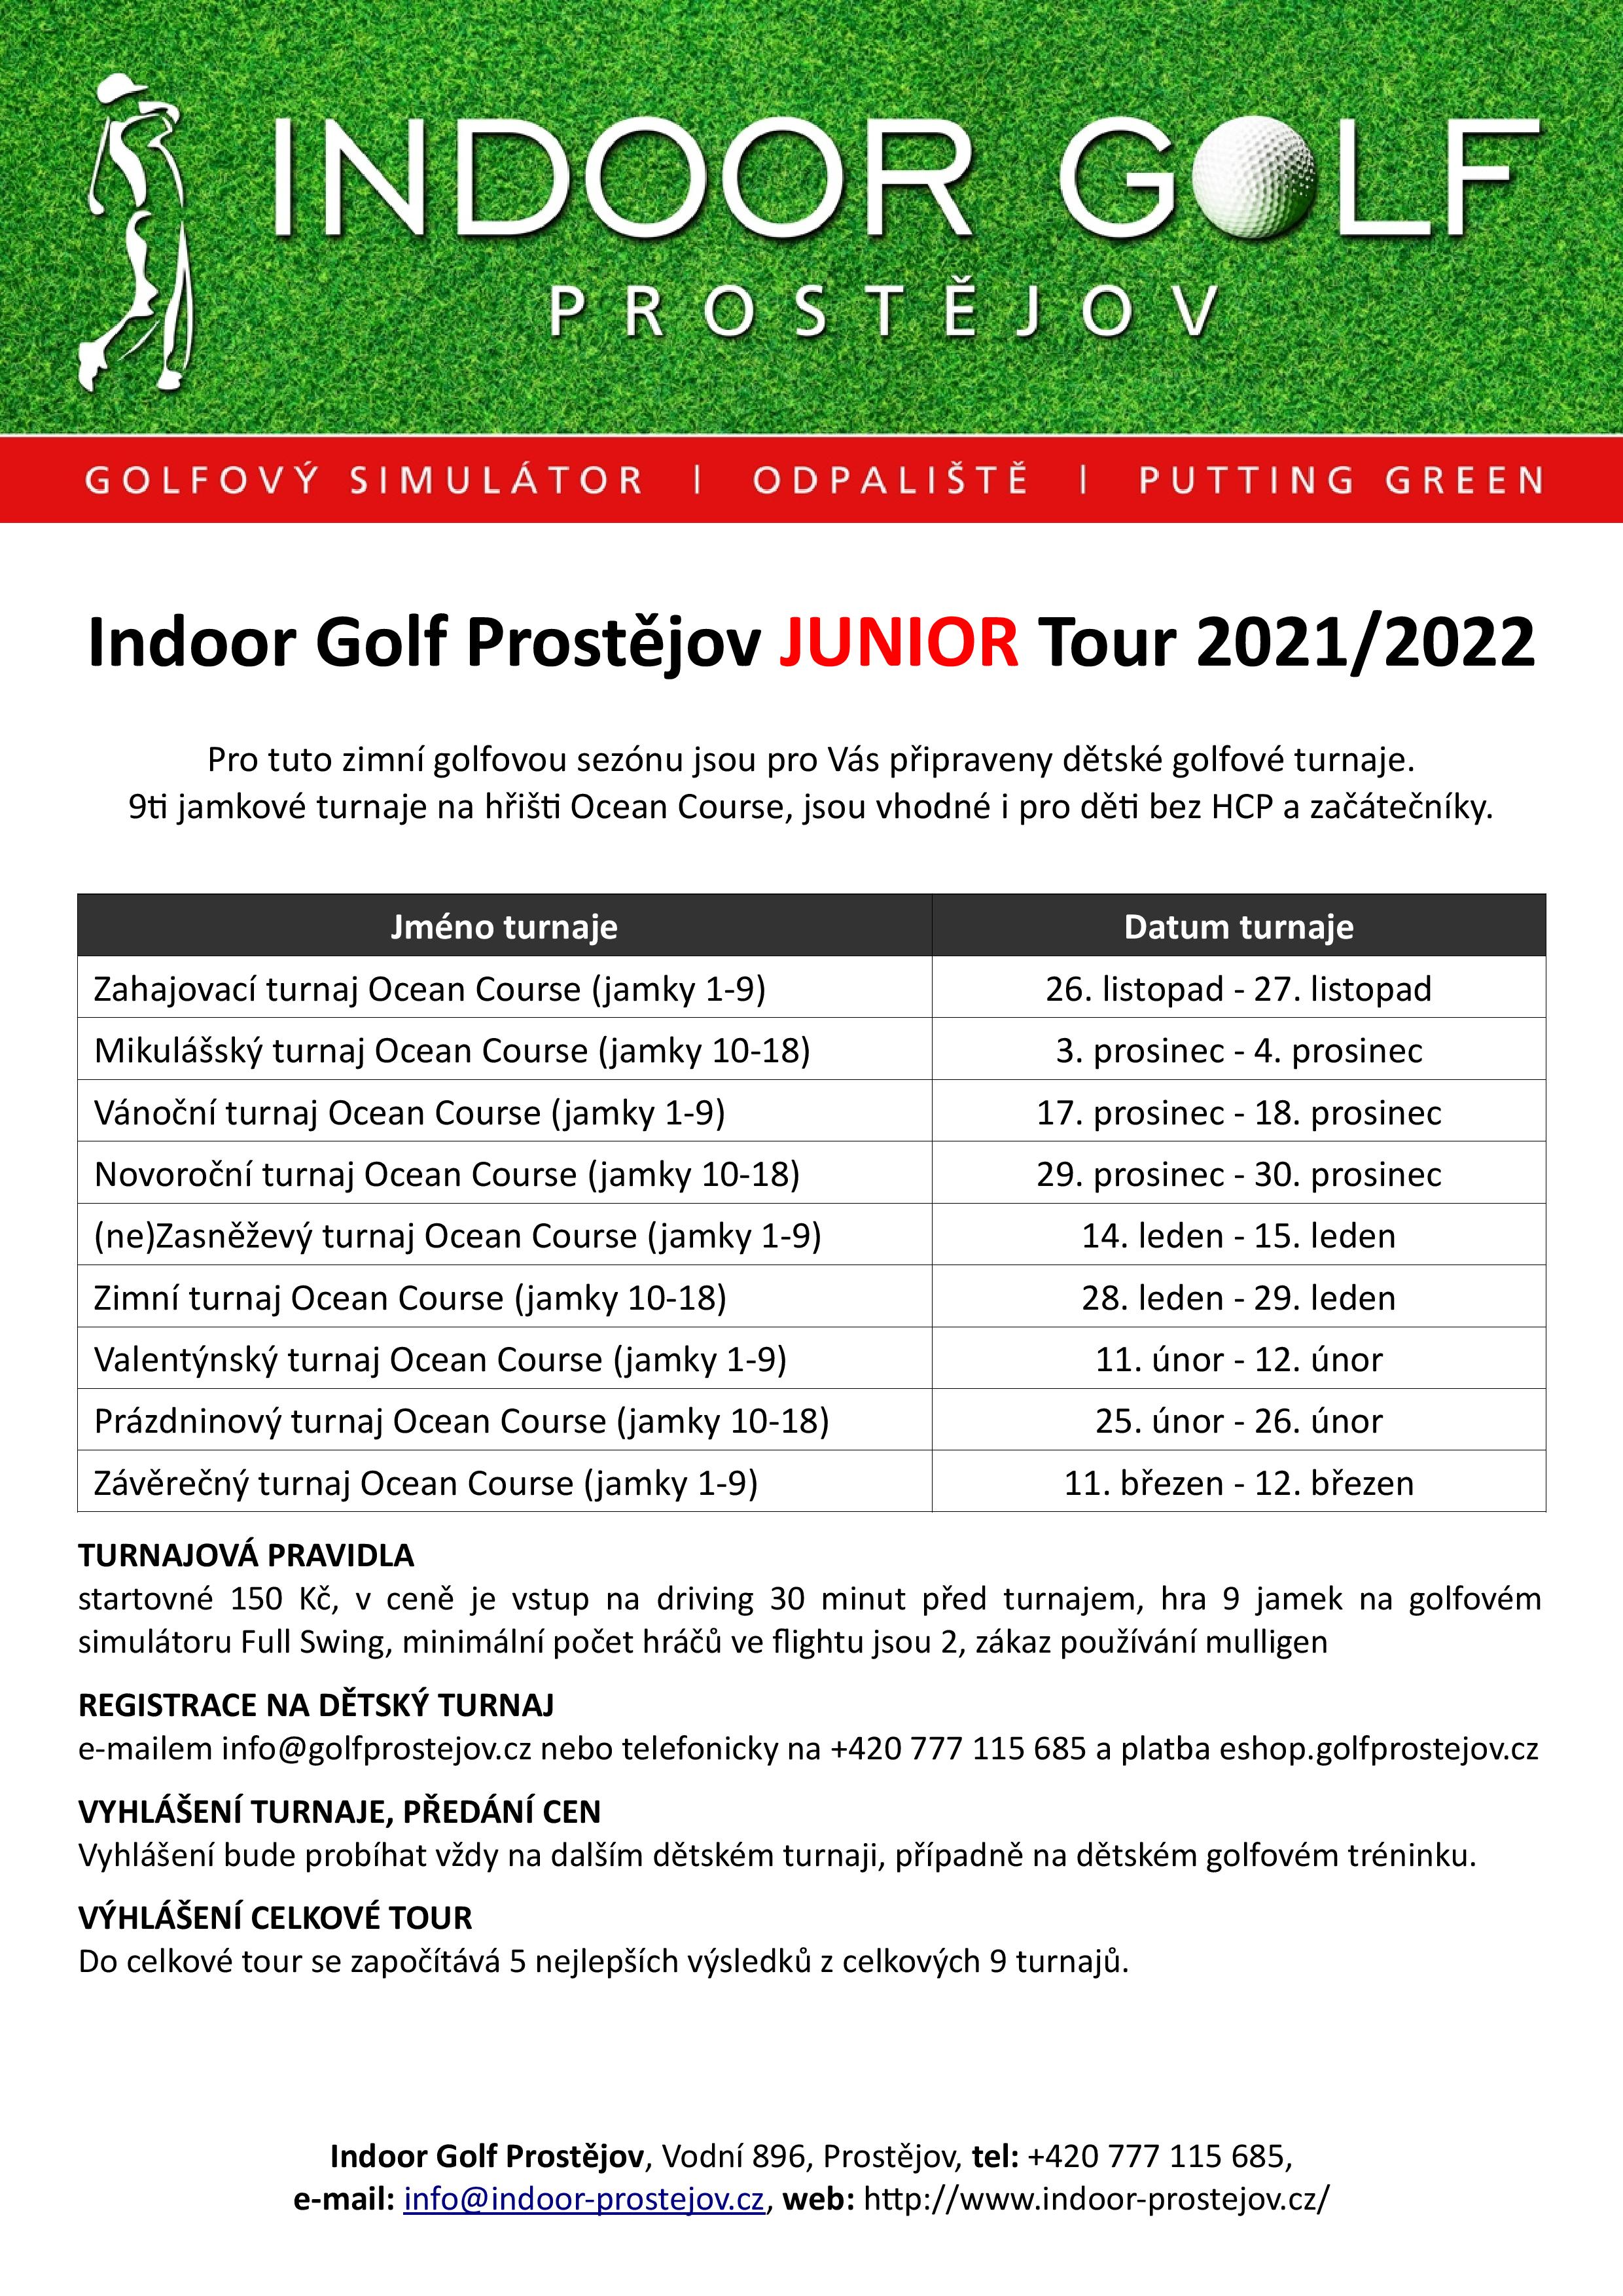 Juniorské turnaje na simulátoru Indoor Golf Prostějov 2021/2022